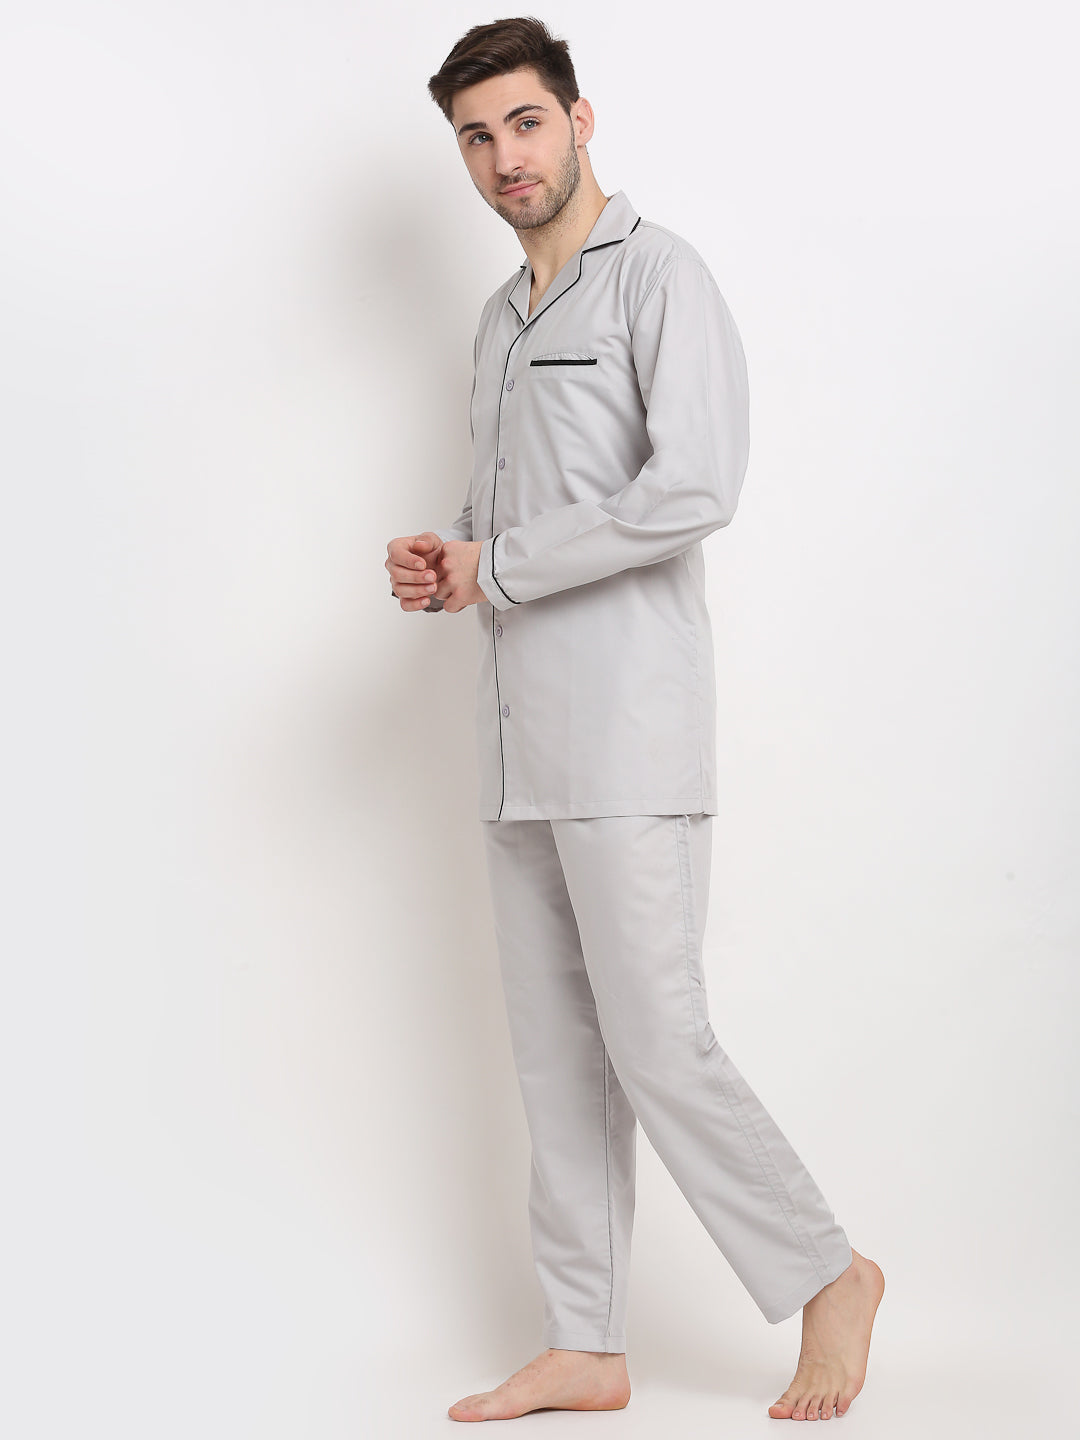 Jainish Men's Steel-Grey Cotton Solid Night Suits ( GNS 003Steel-Grey ) - Distacart